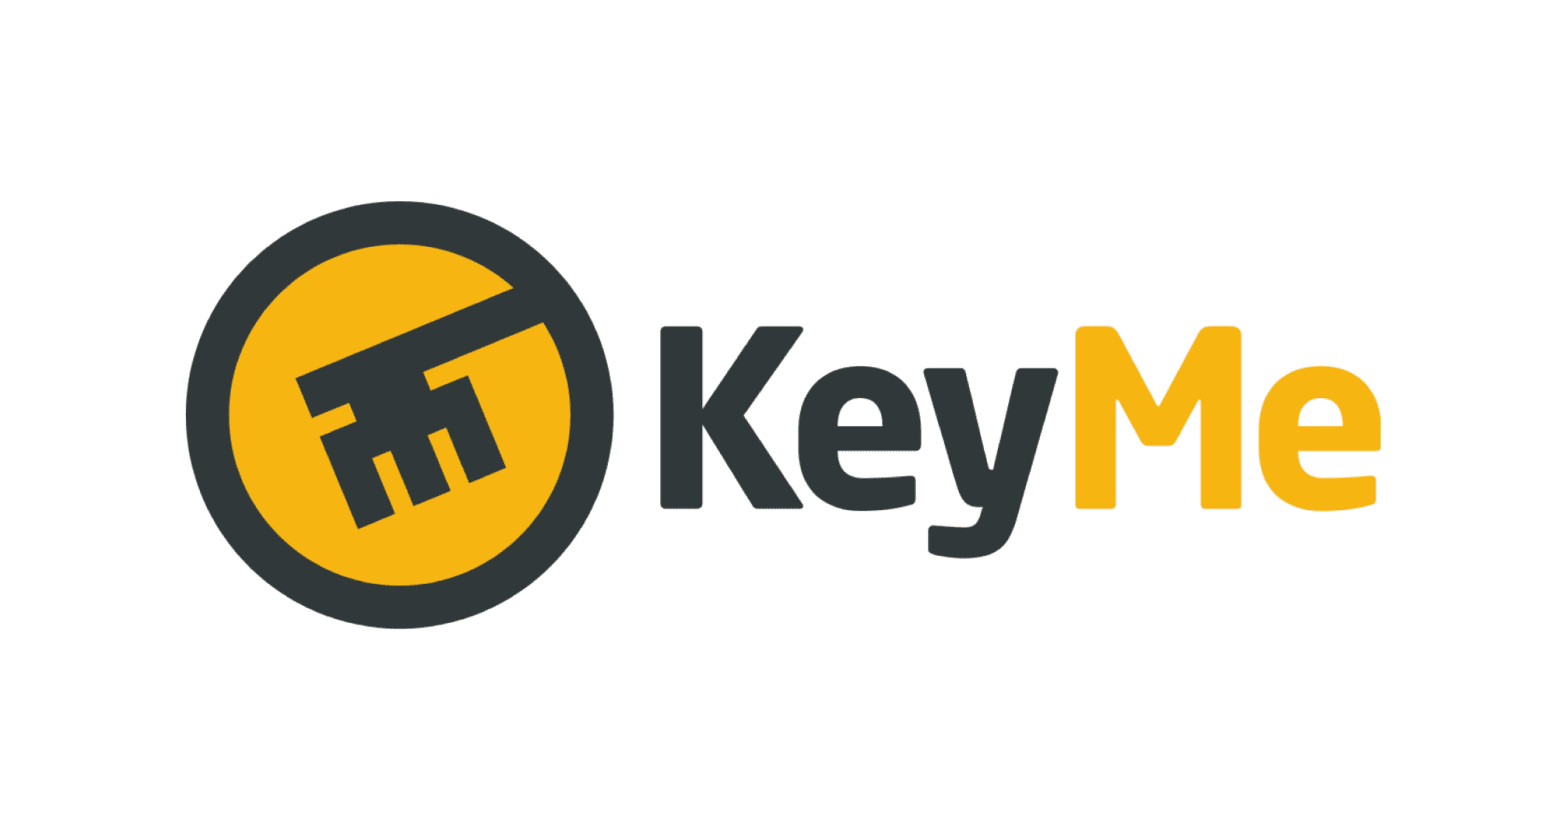 KeyMe Locksmiths